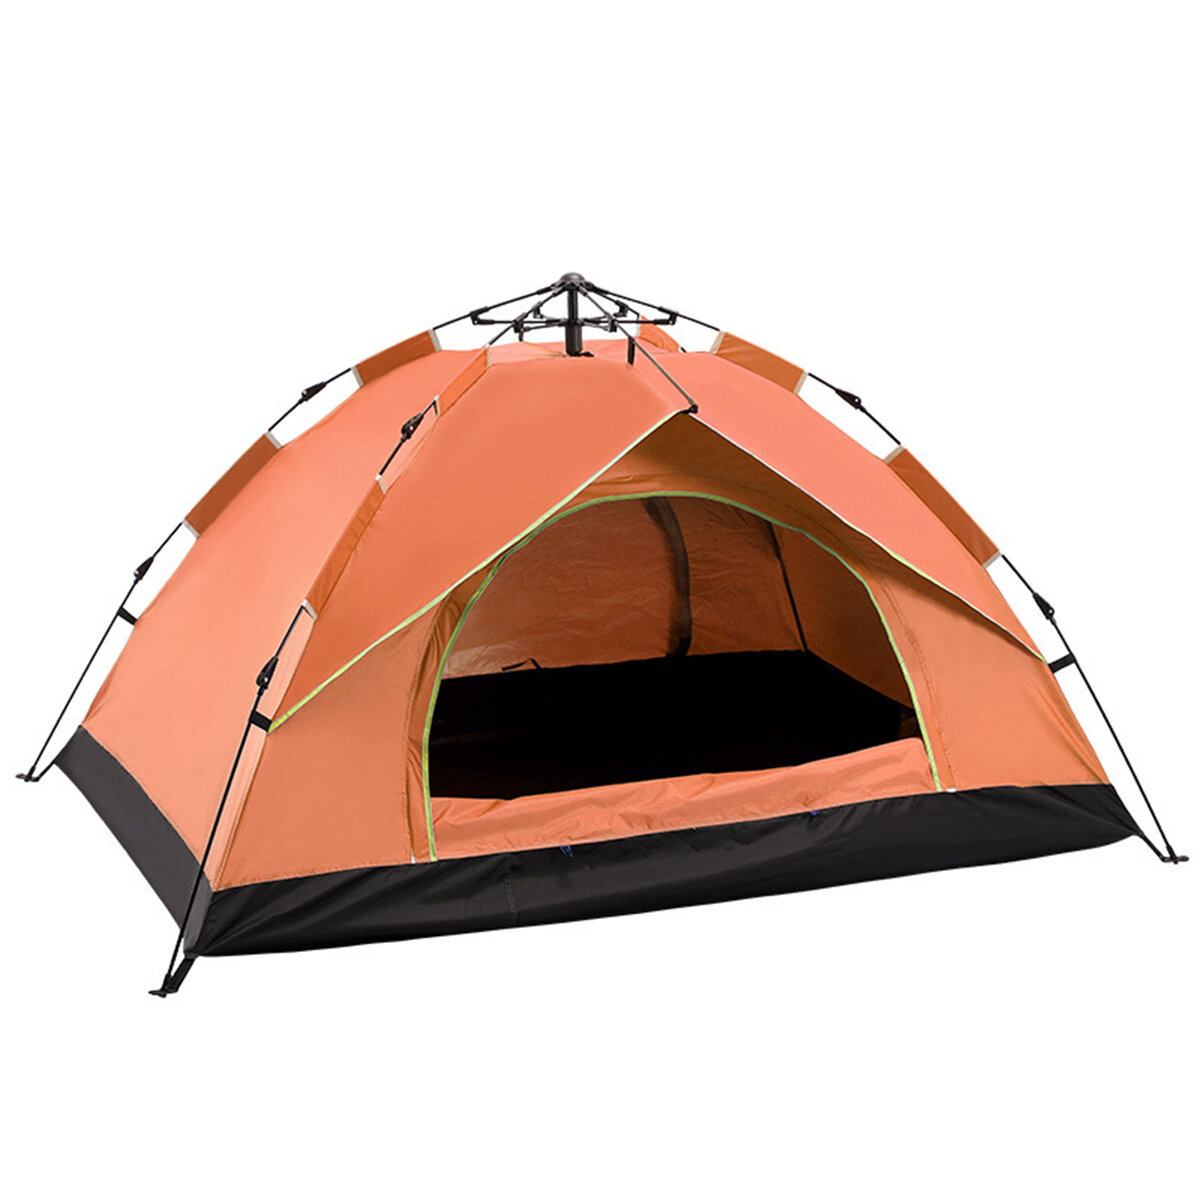 Automatikus gyorsan nyitható kemping sátor 3-4 személy számára, UV védelemmel és vízálló kivitelben kültéri használatra.